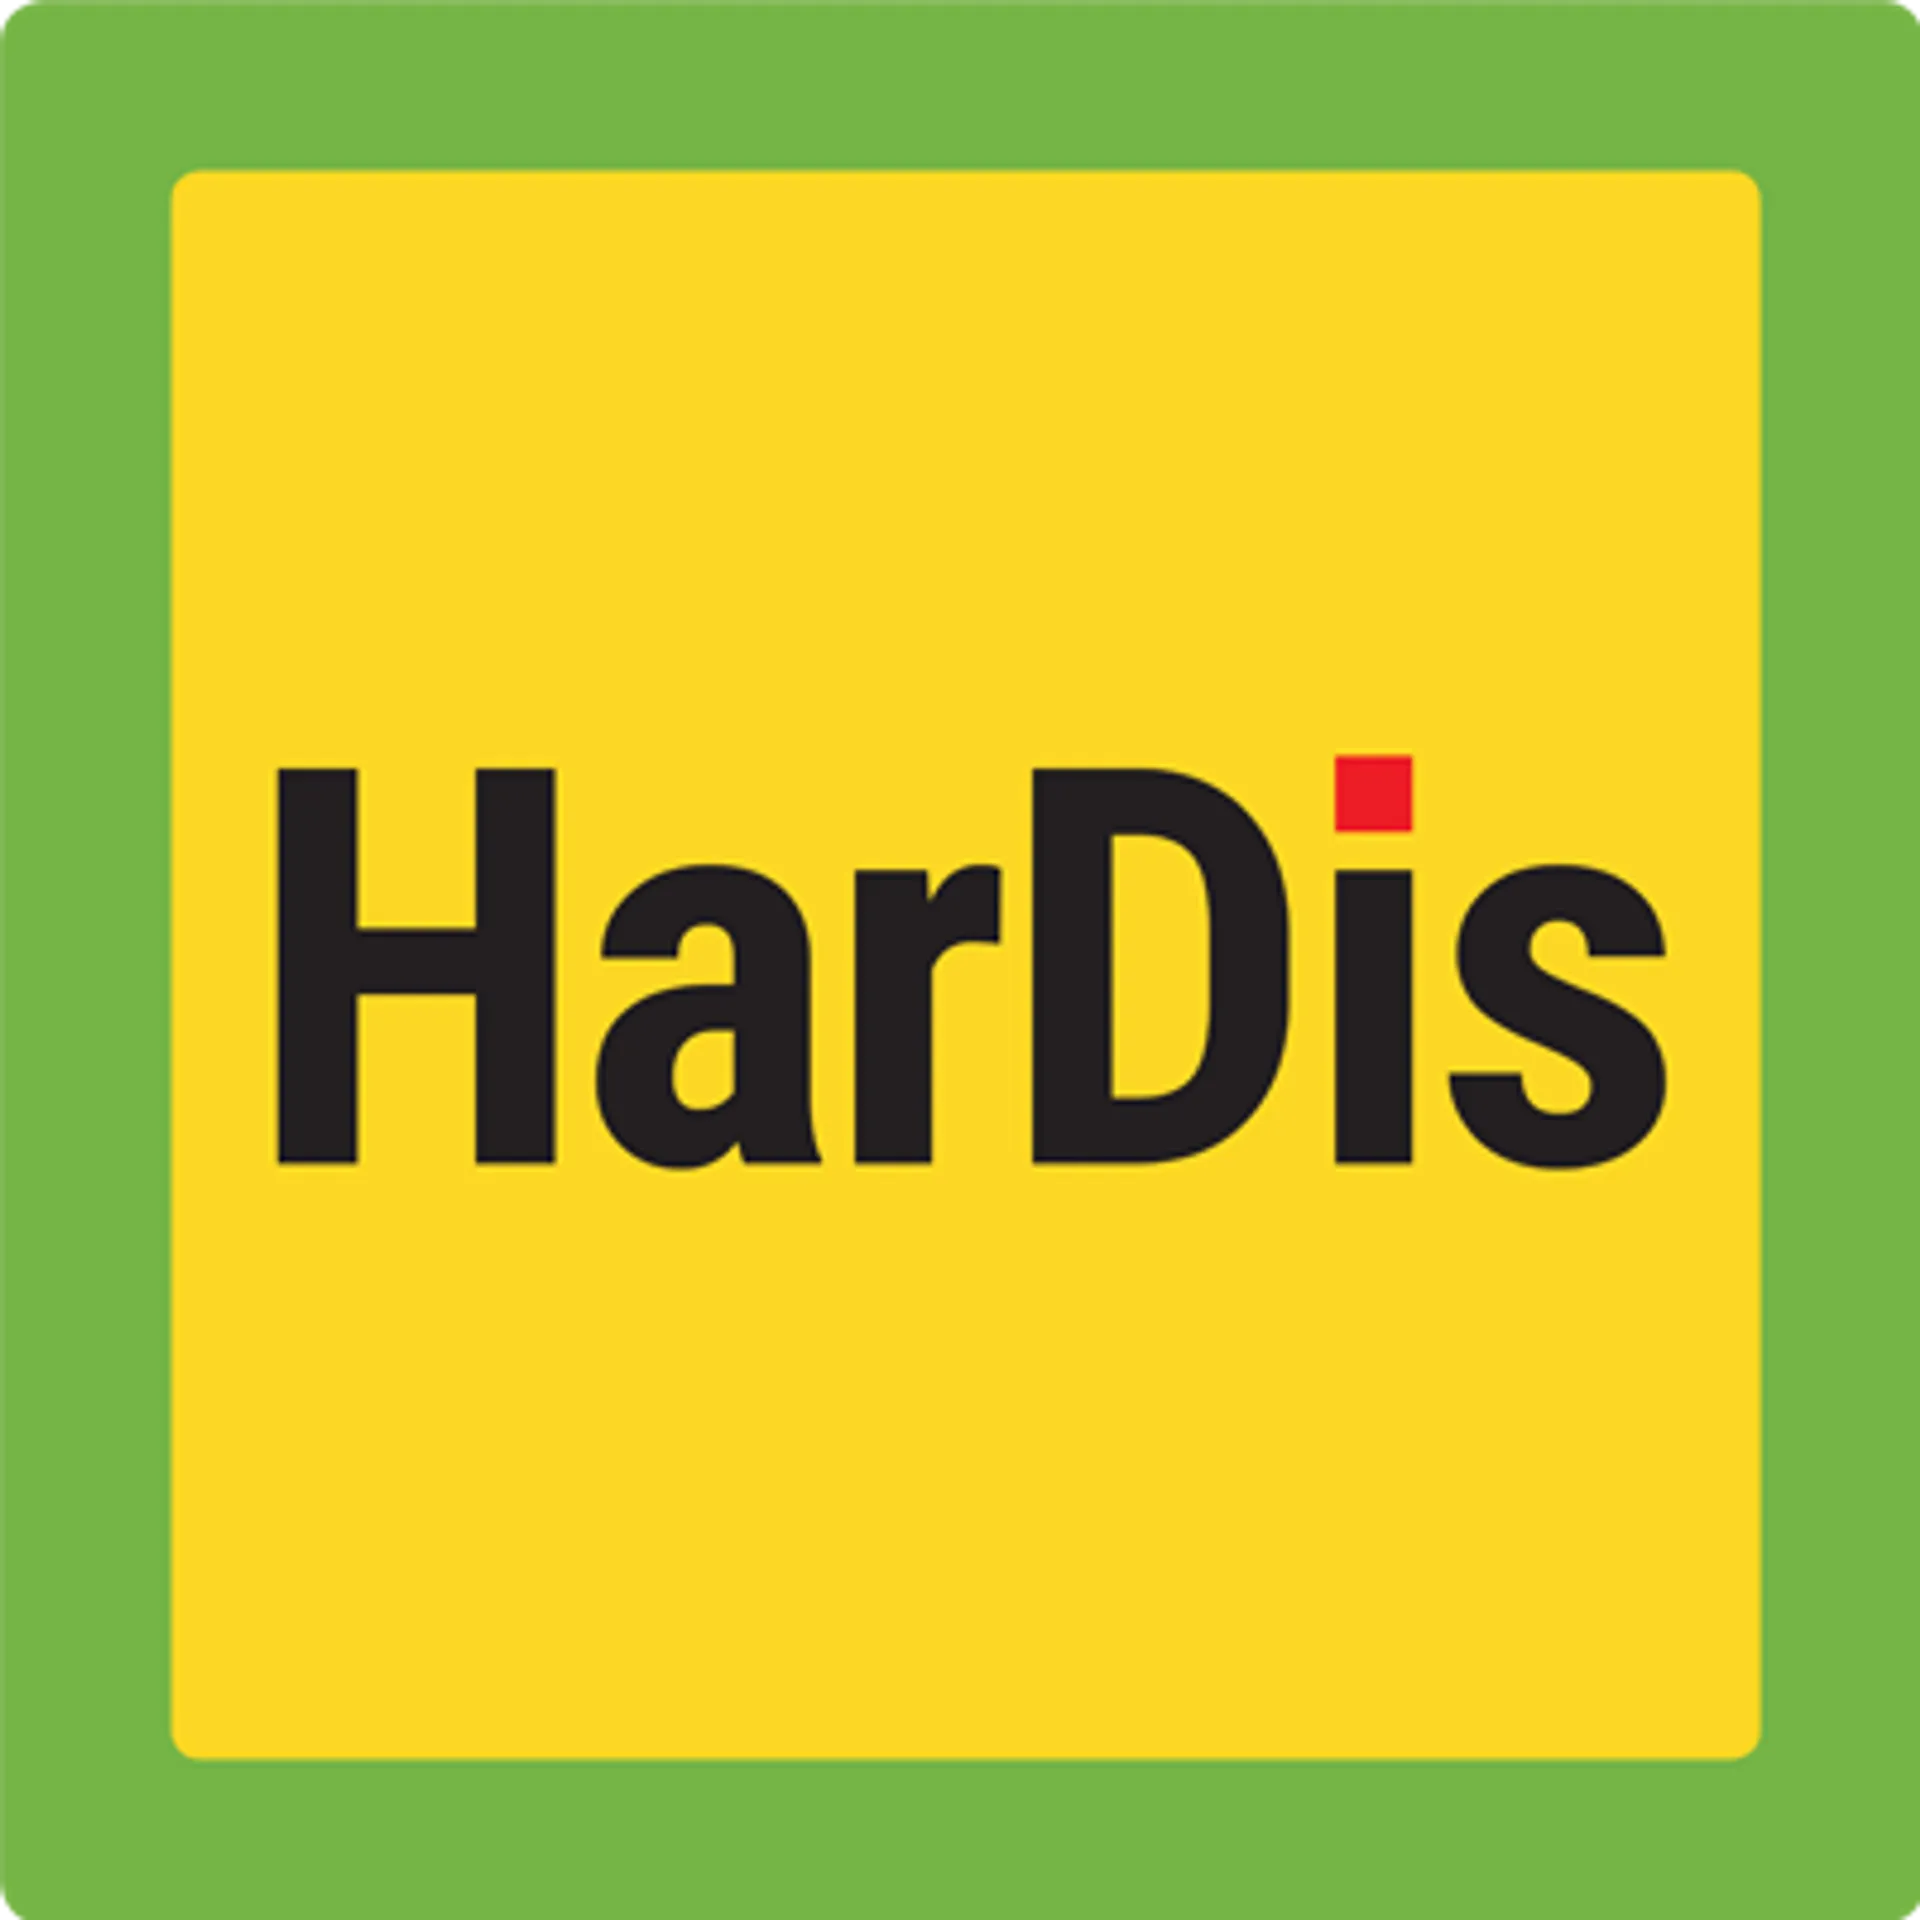 HARDIS logo